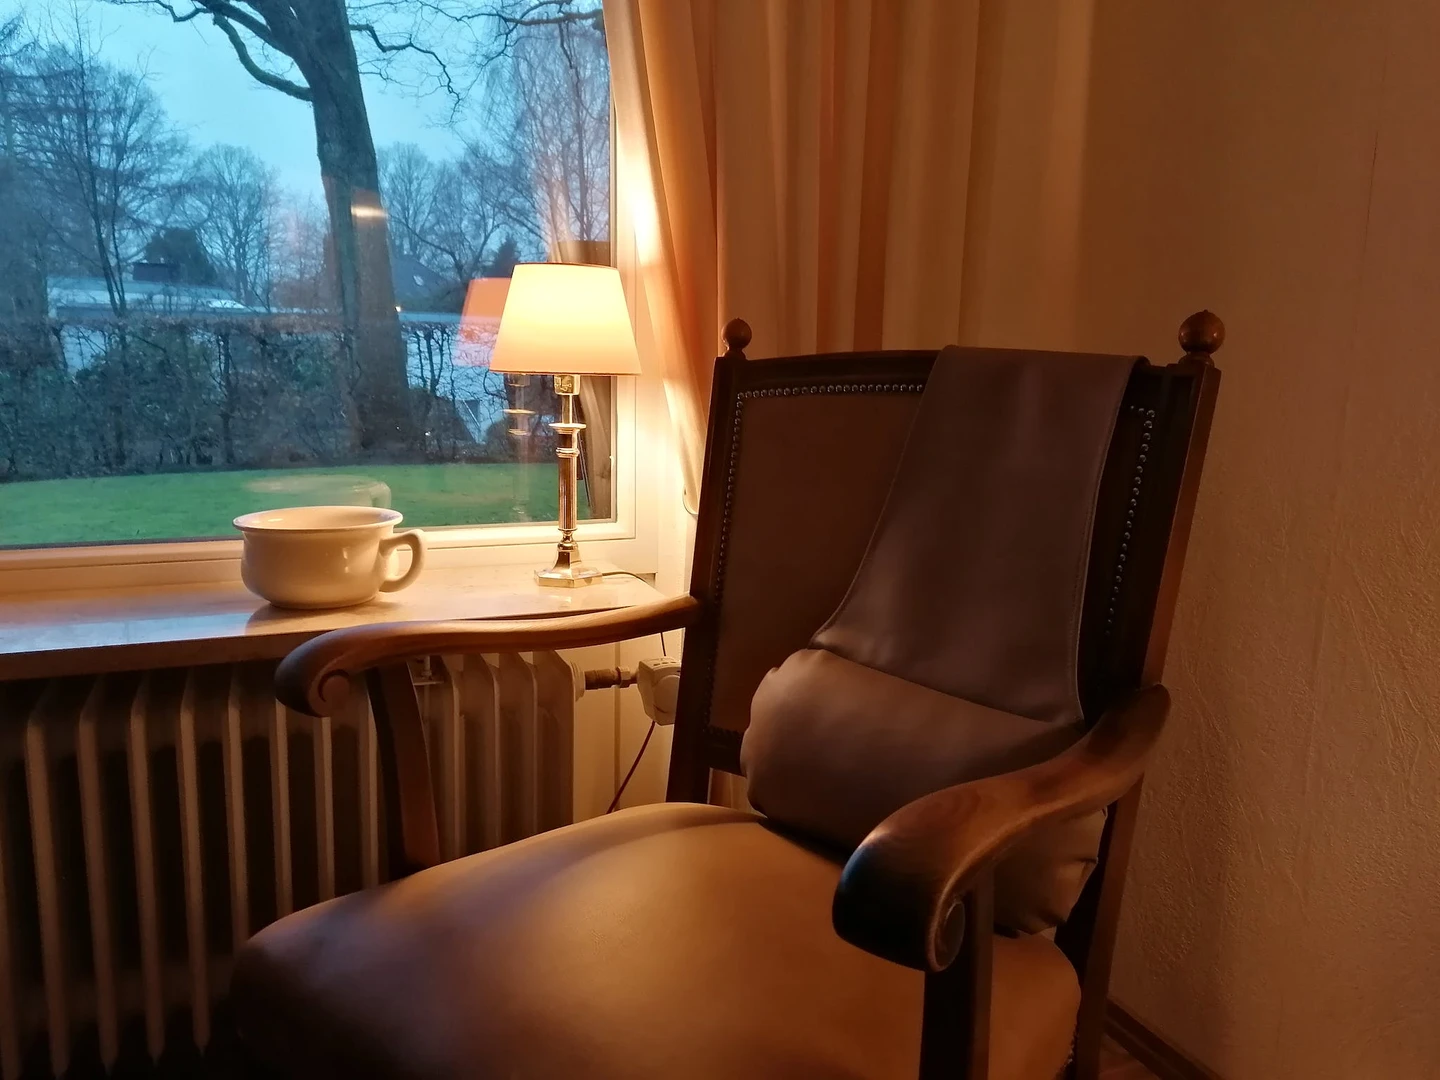 Hamburg de çift kişilik yataklı kiralık oda